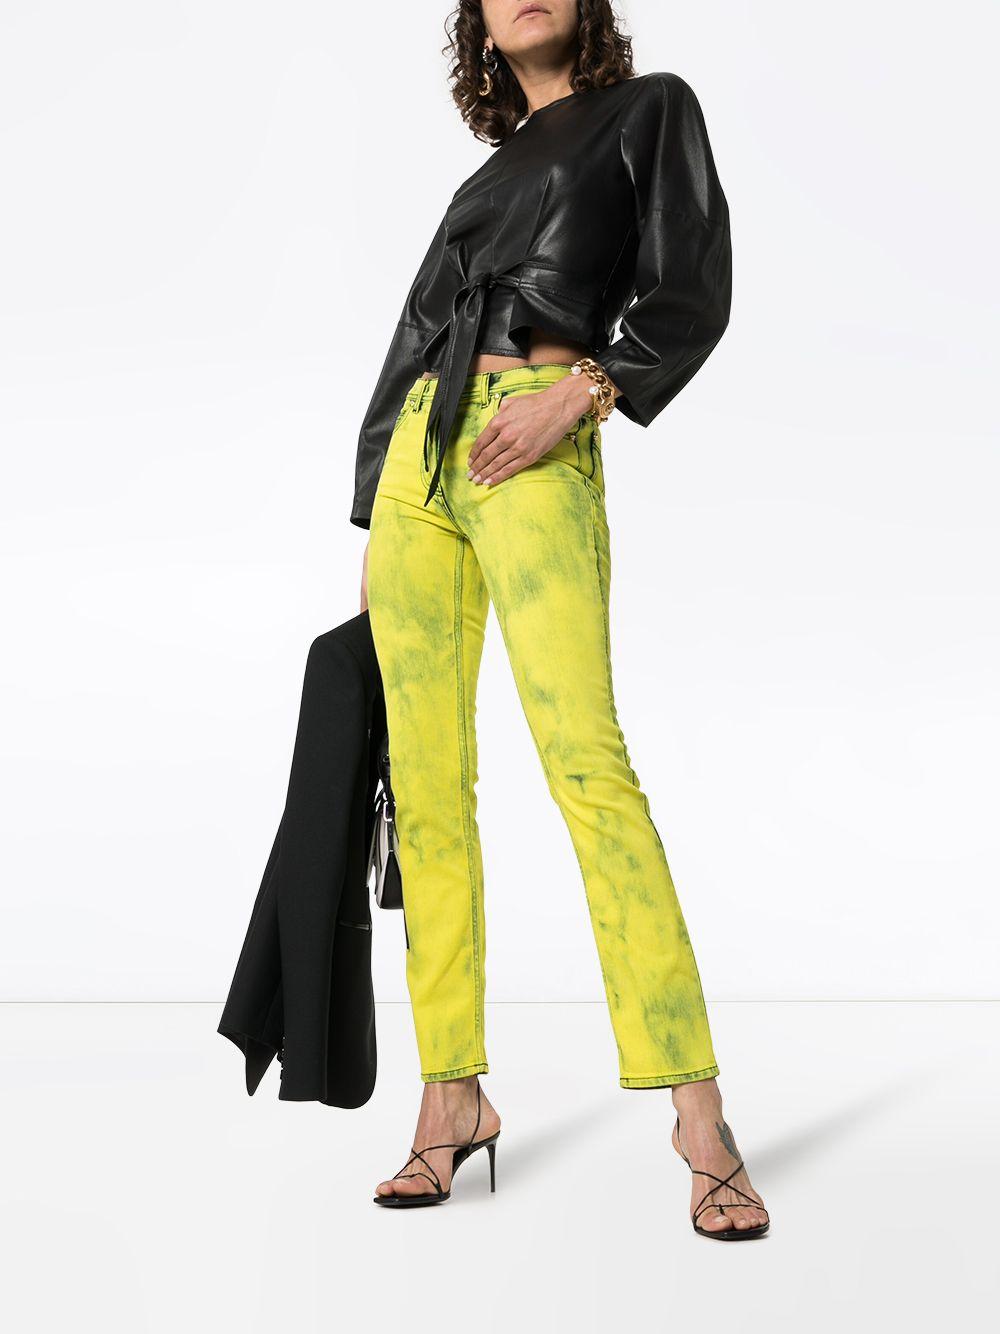 Jean skinny en denim délavé à l'acide jaune de Versace avec Label Logo

Ce jean skinny Versace acid wash logo label est confectionné en Italie dans un denim extensible. Il est doté d'une braguette et d'un bouton, de passants de ceinture et de cinq